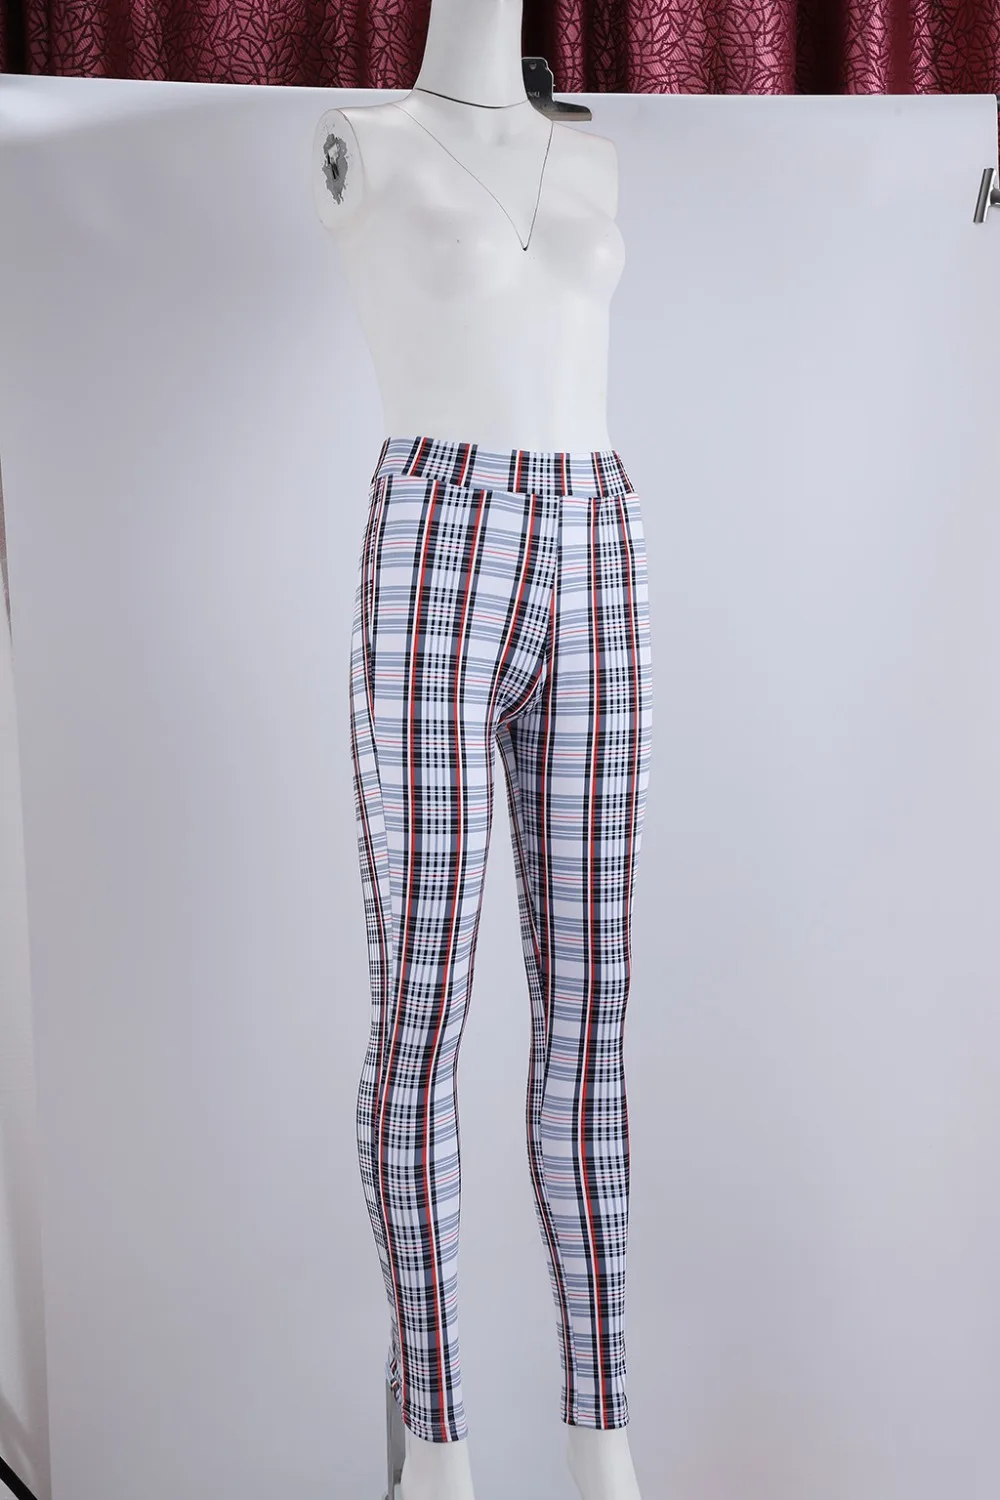 Женская одежда, модные цветные клетчатые узкие брюки с высокой талией, повседневные сексуальные обтягивающие узкие брюки длиной до щиколотки, облегающие уличные брюки